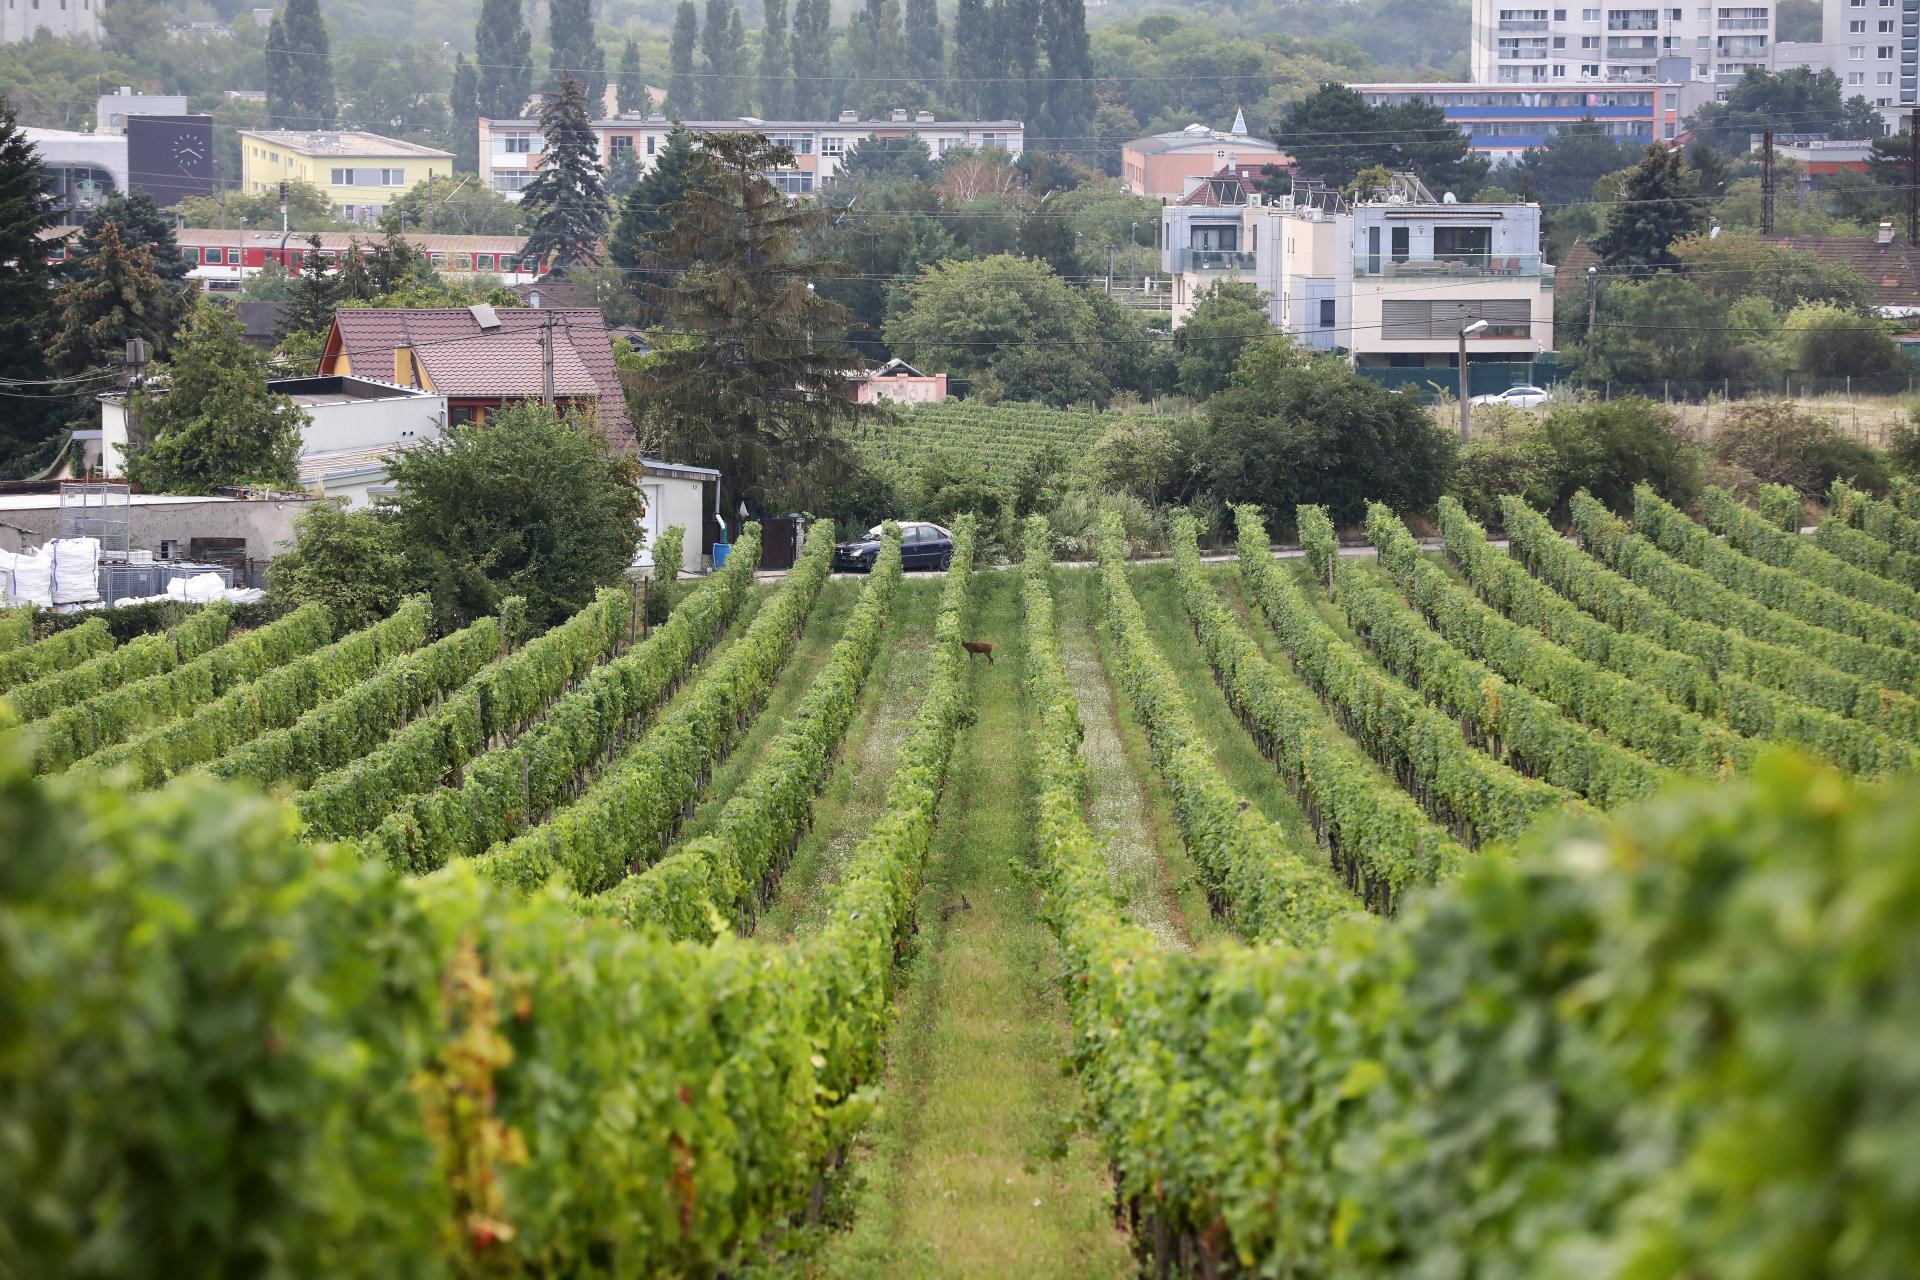 La France s’attend à une production de vin plus élevée cette année, la croissance pourrait dépasser 20%